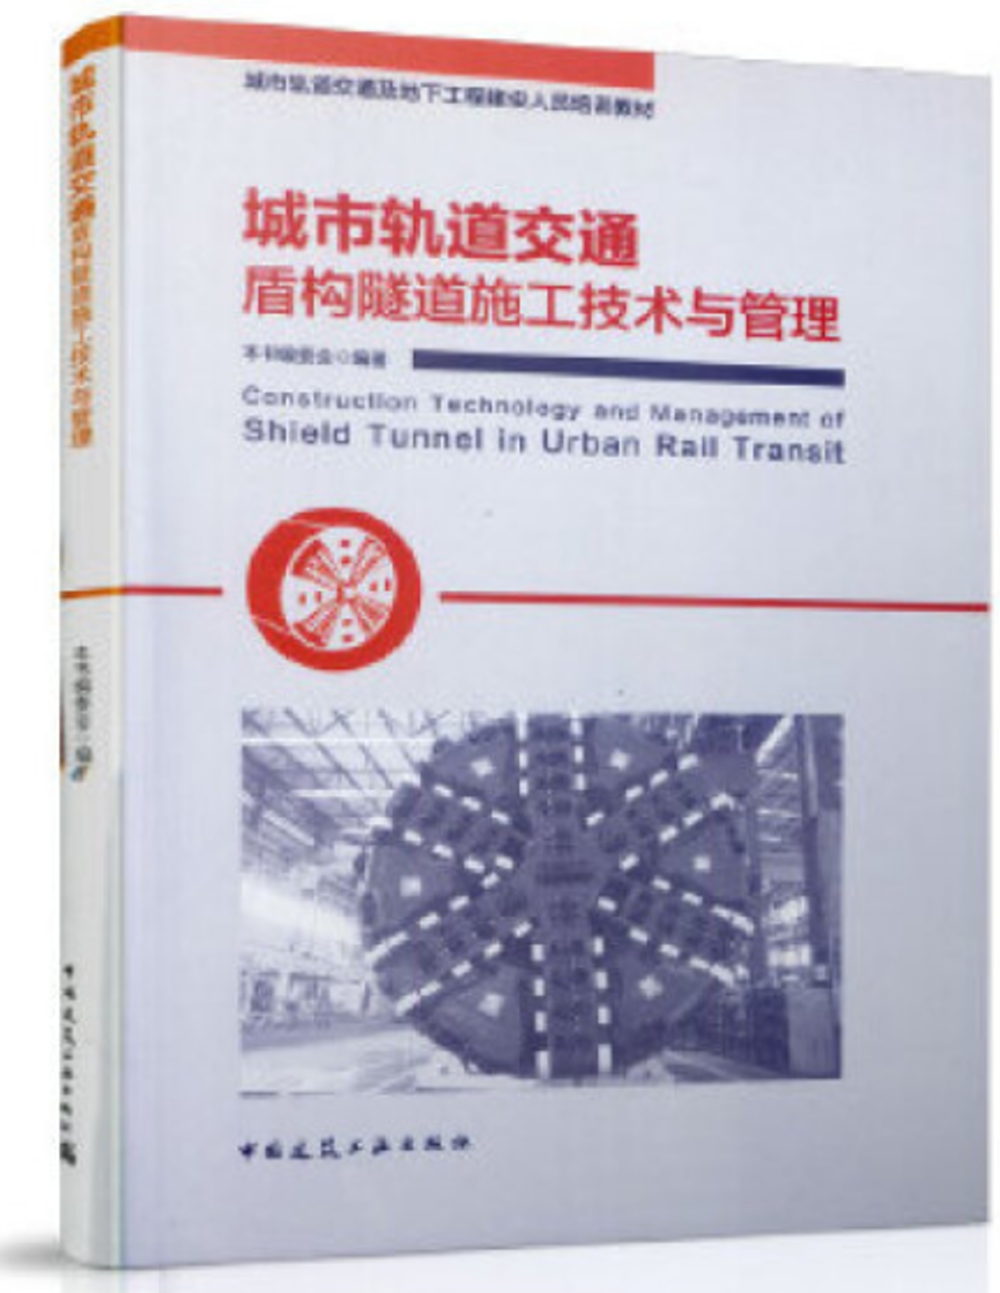 城市軌道交通盾構隧道施工技術與管理